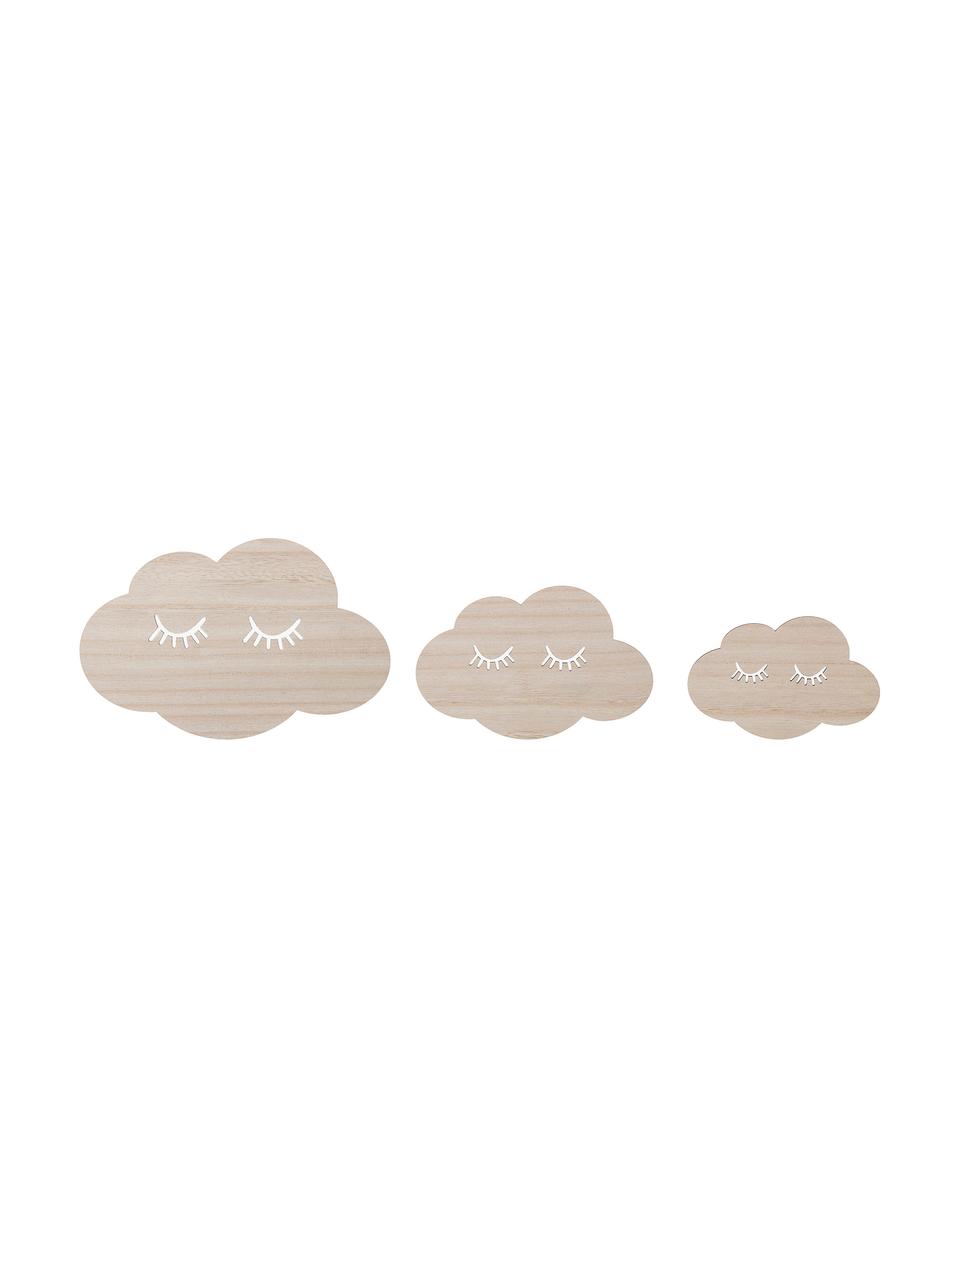 Sada nástěnných dekorací Clouds, 3 díly, Béžová